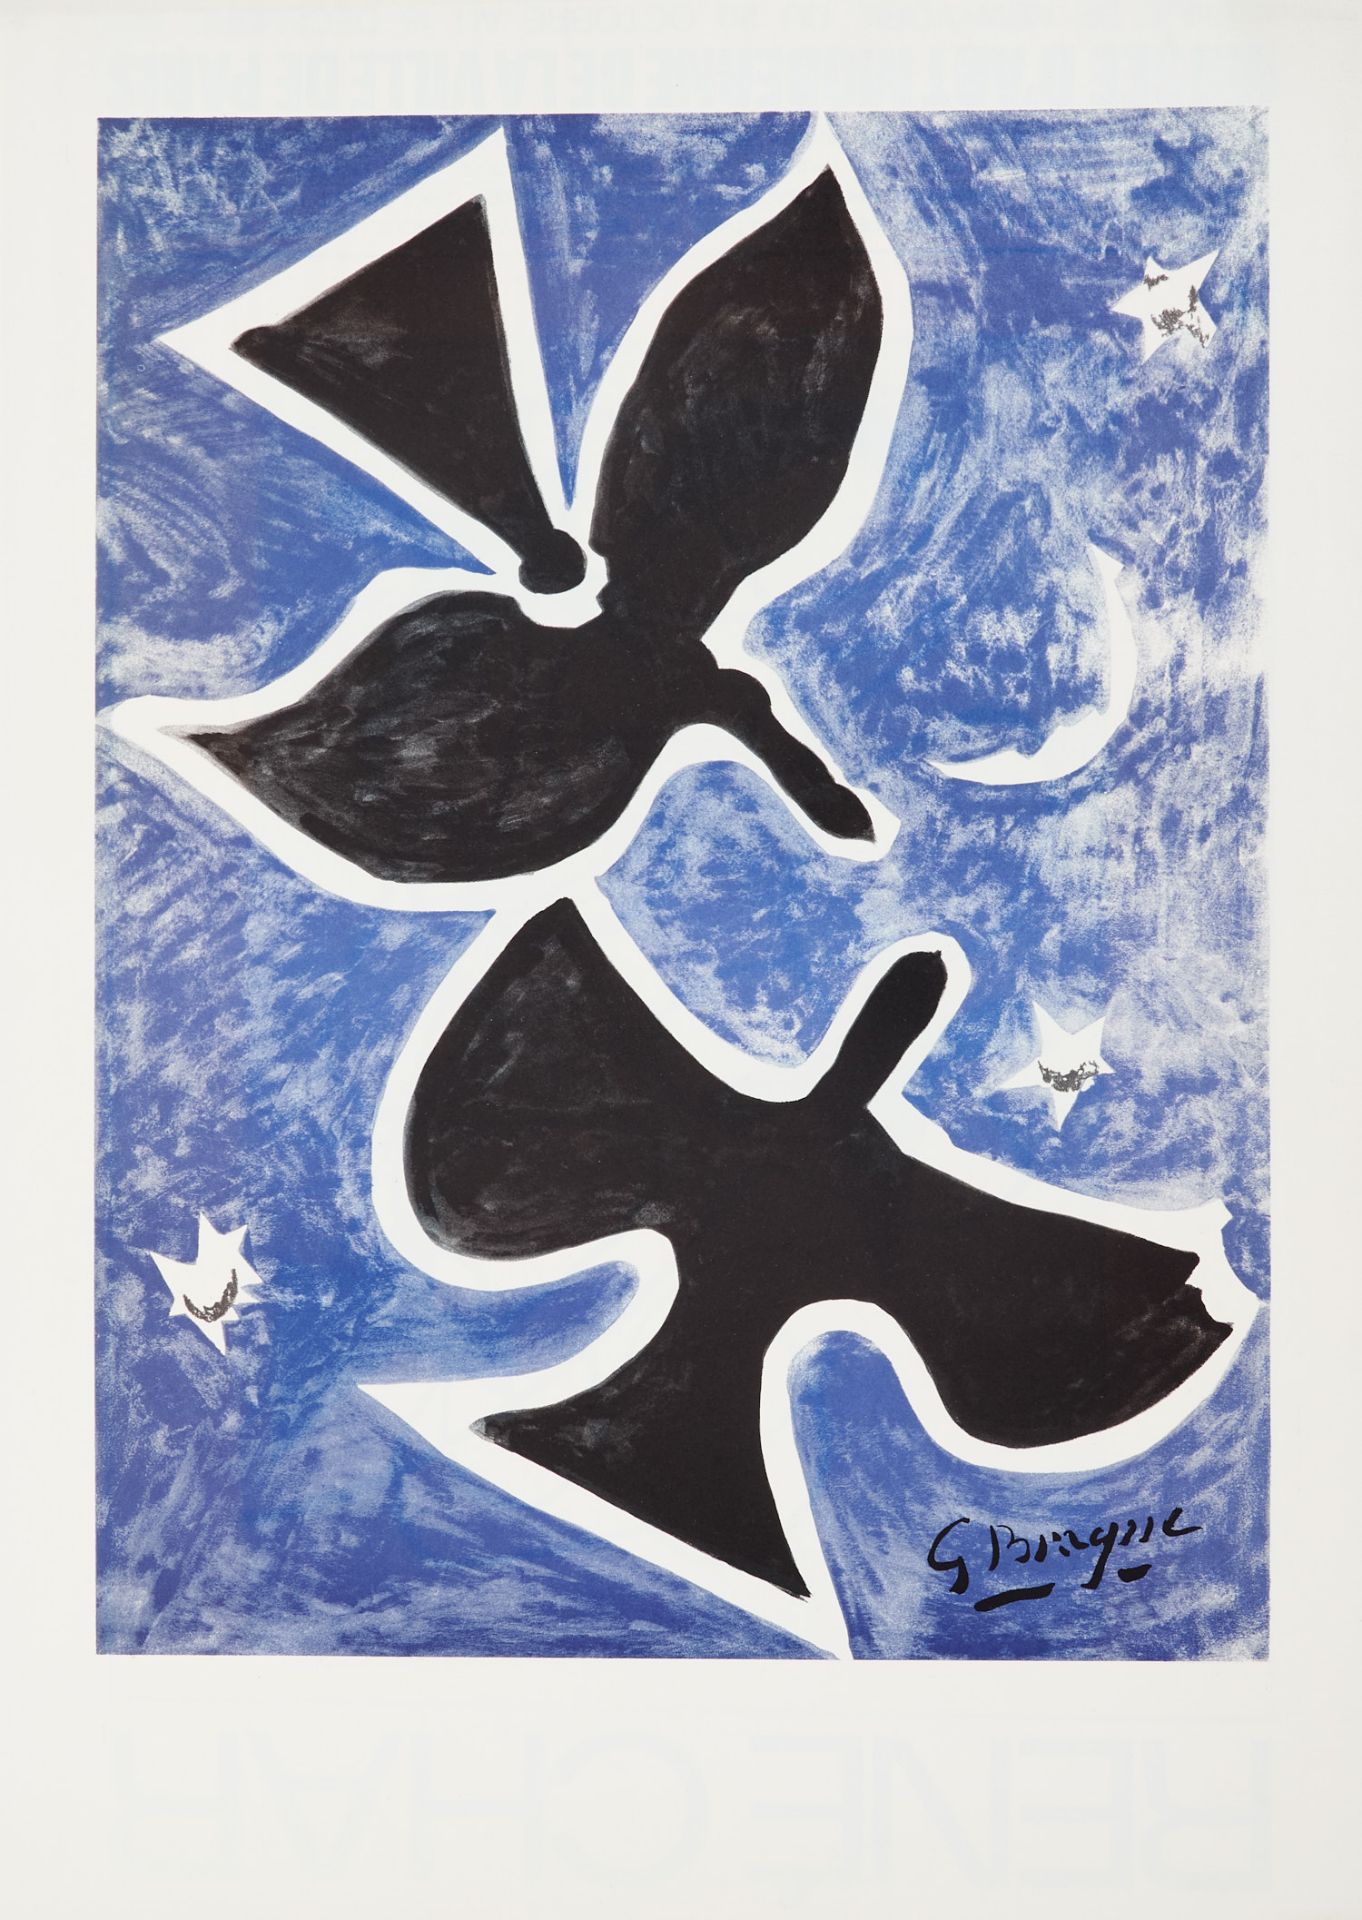 Plakate Braque - 2 Ausstellungsplakate. Farblithographie. 1959-61. Ca. 73 x 50 cm. (6) - Frisch. - Bild 5 aus 5